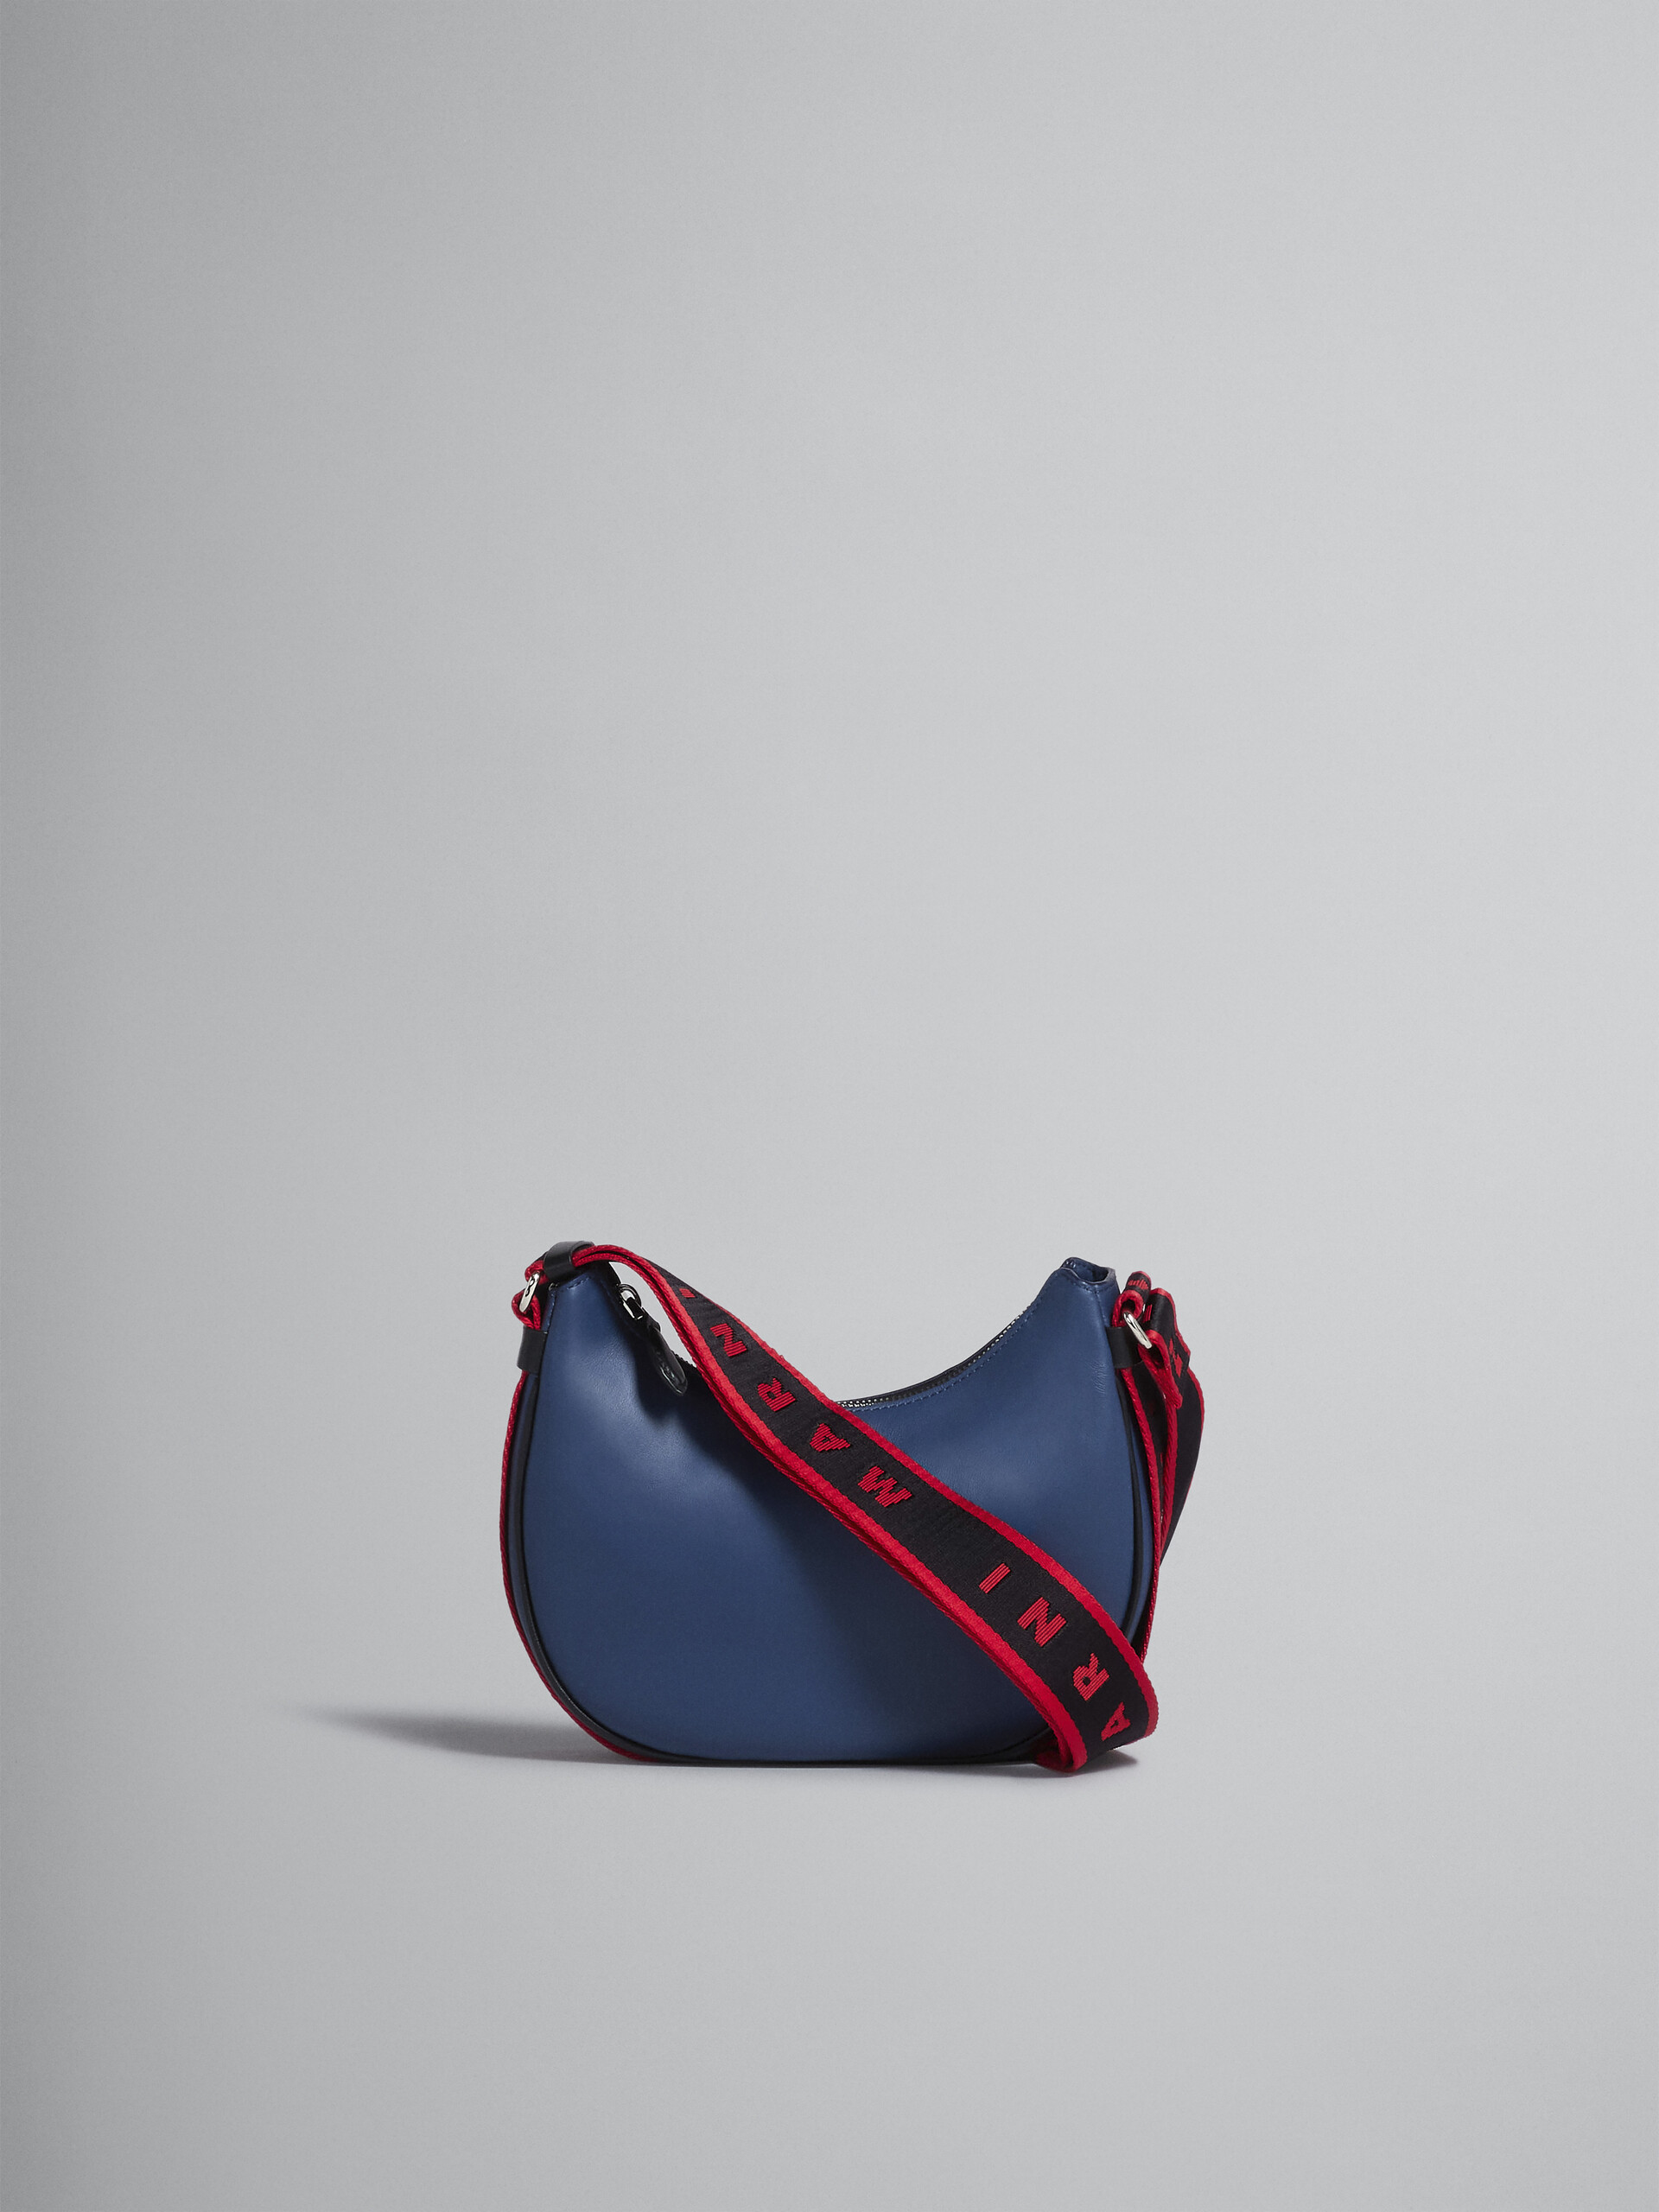 Bey Small Bag in blue leather - Shoulder Bag - Image 1